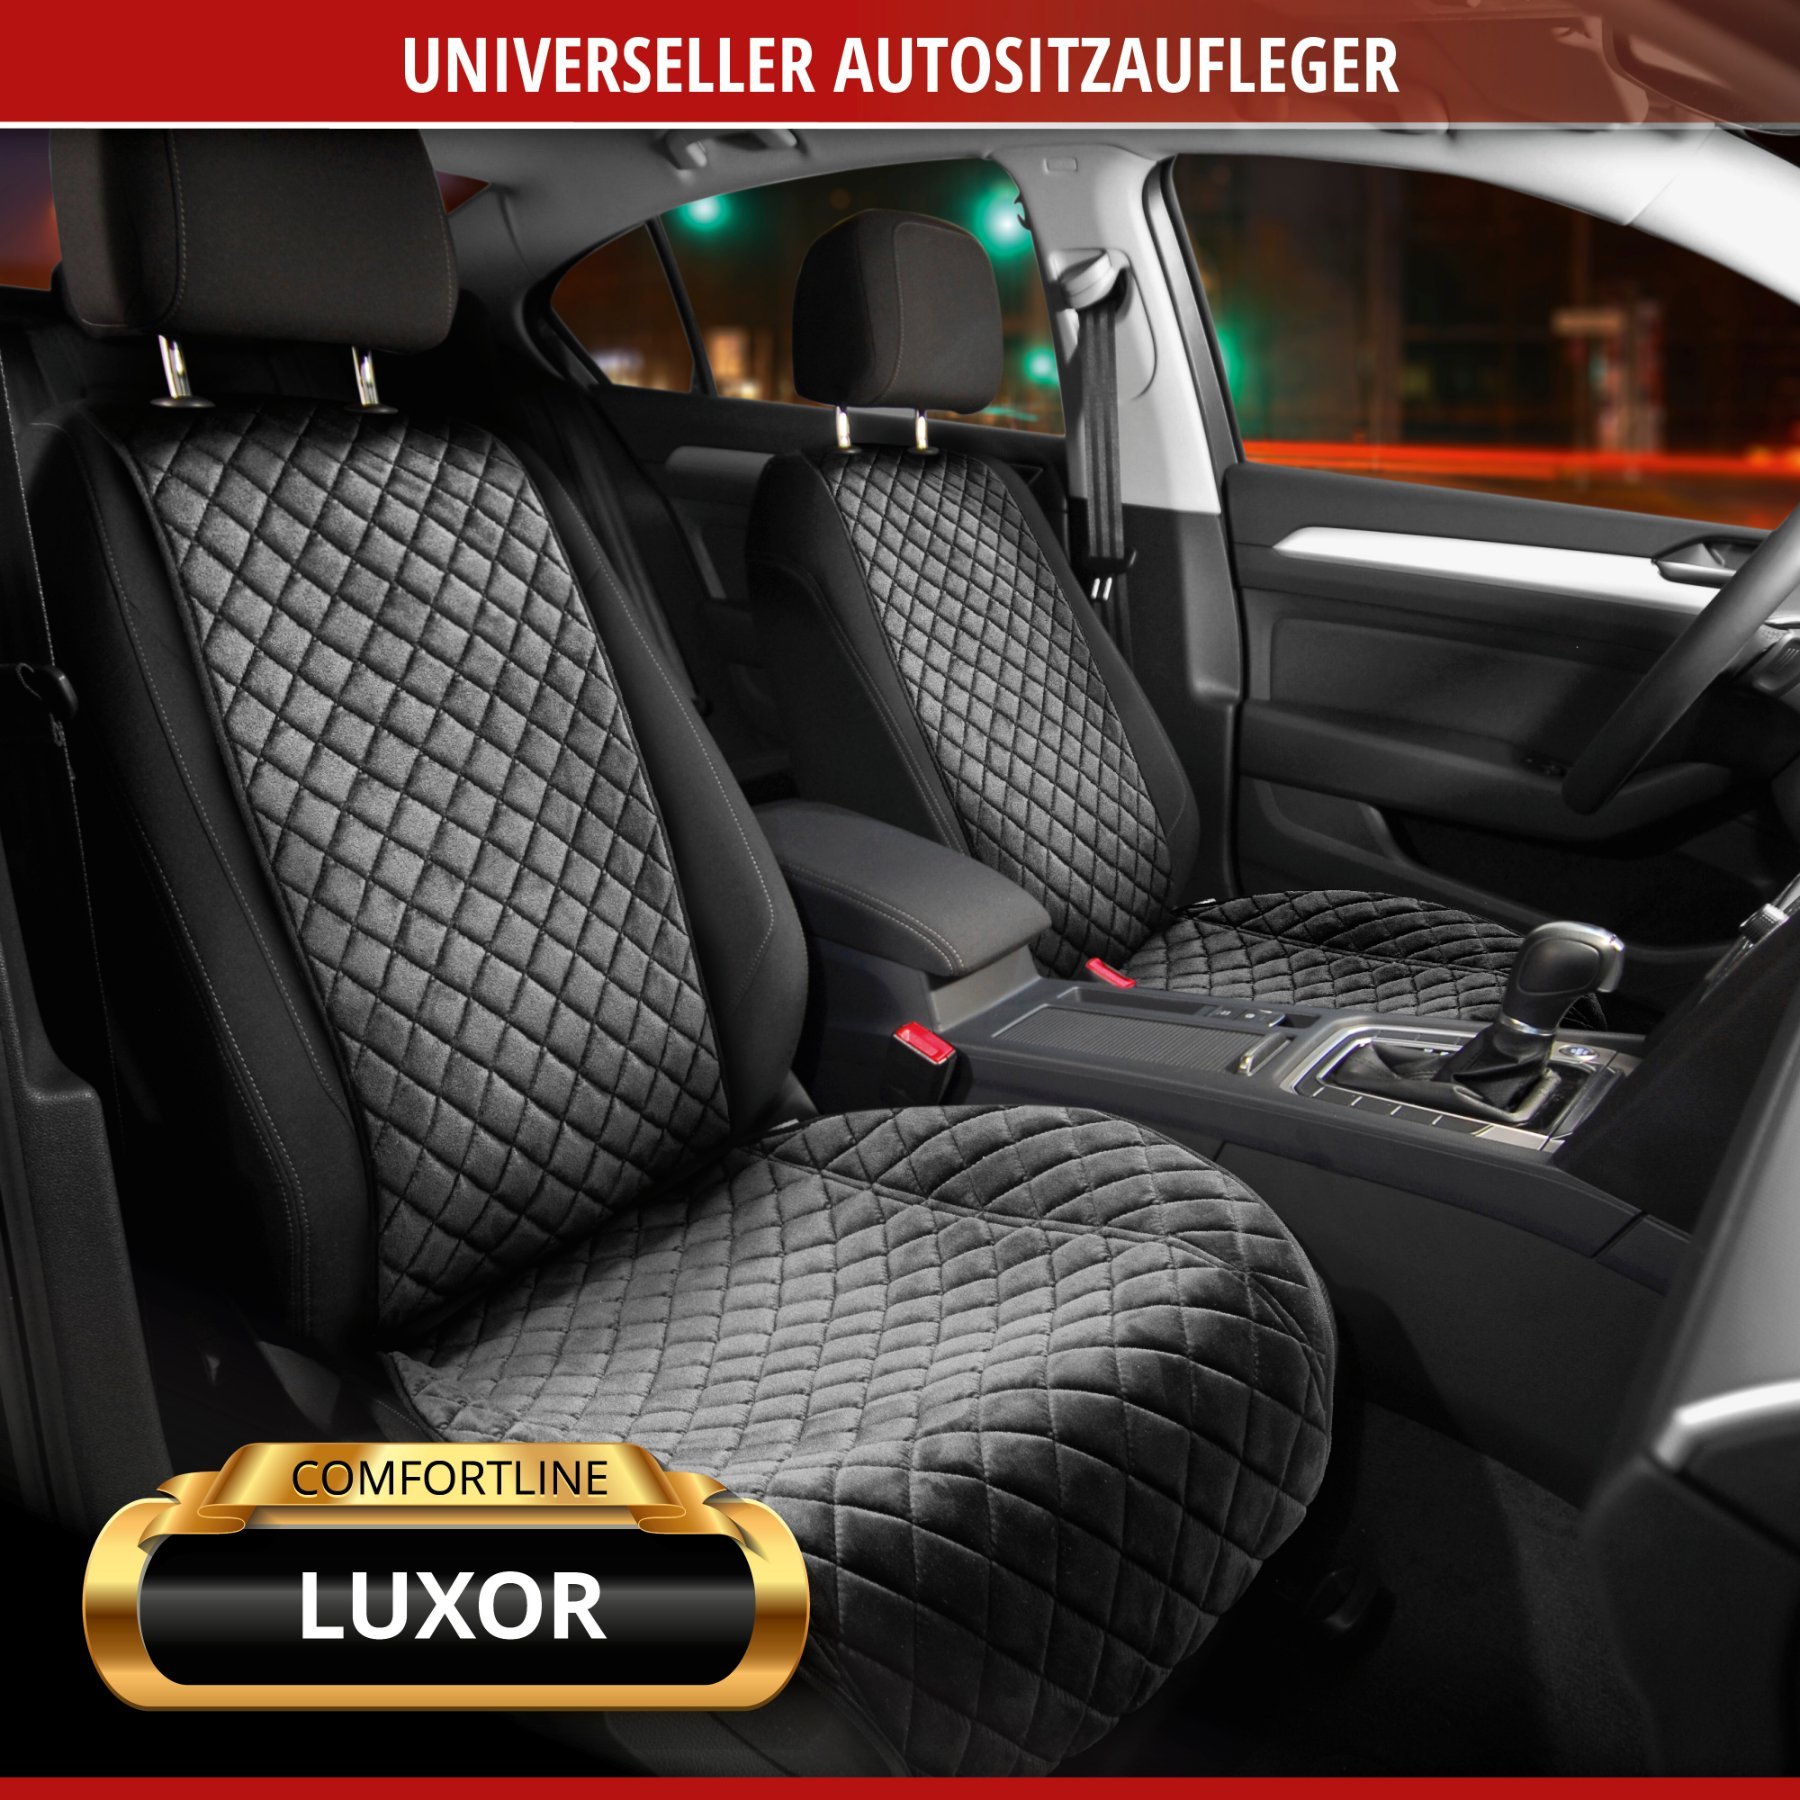 PKW-Sitzaufleger Comfortline Luxor inkl. Anti-Rutsch-Beschichtung, Auto-Sitzauflage für 1 Vordersitz mit Seitenwangen-Schutz